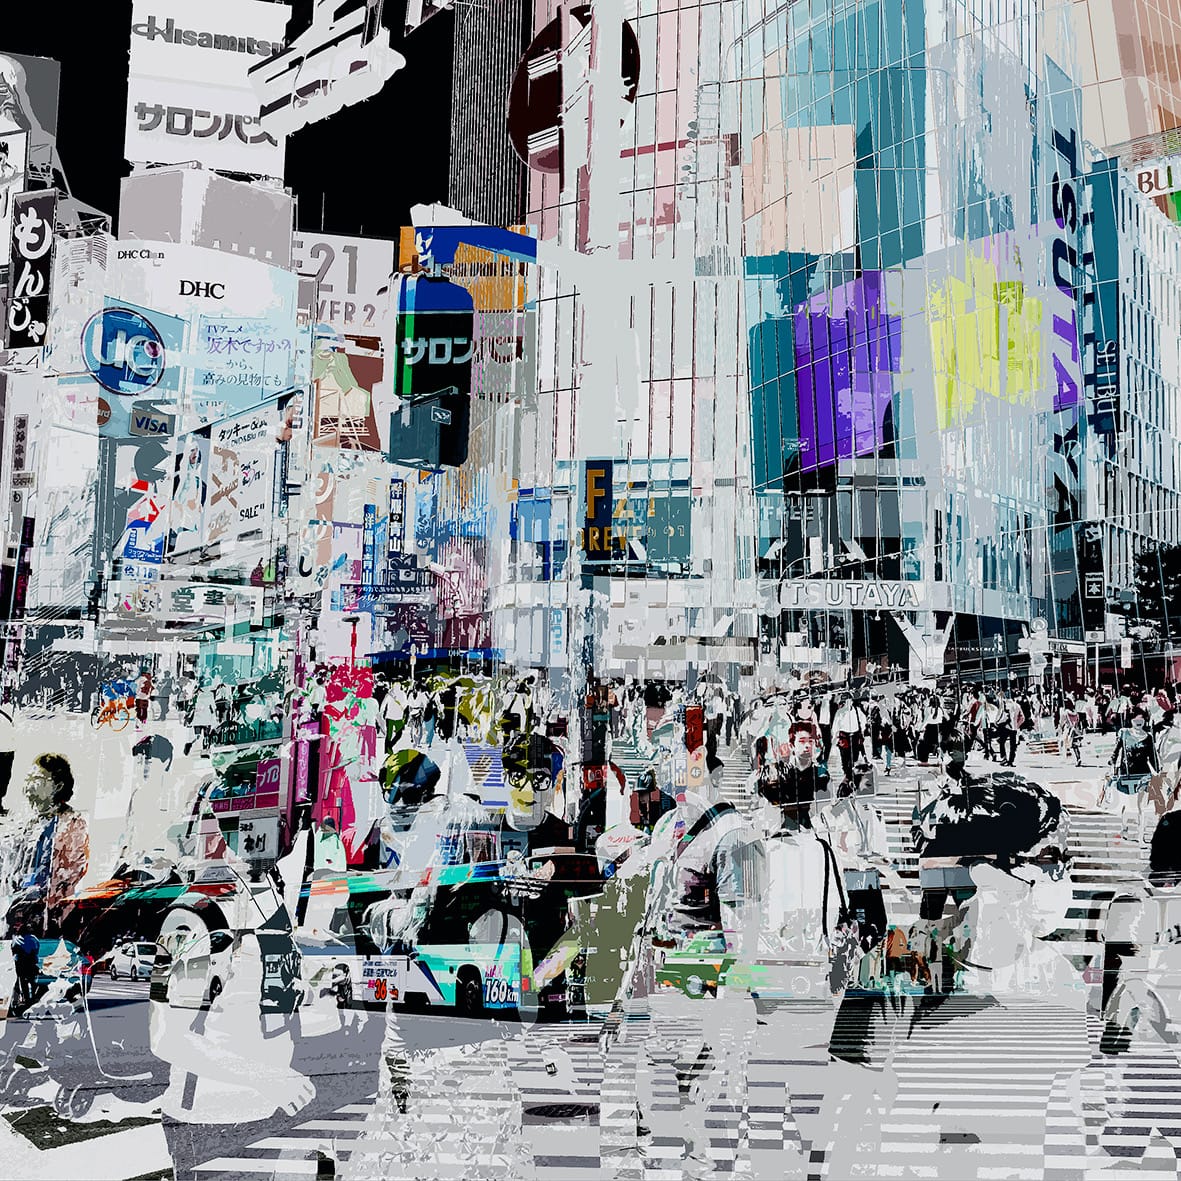 乌特-布鲁诺 数字拼贴画 日本市中心有很多人叠加在一起的黑白照片